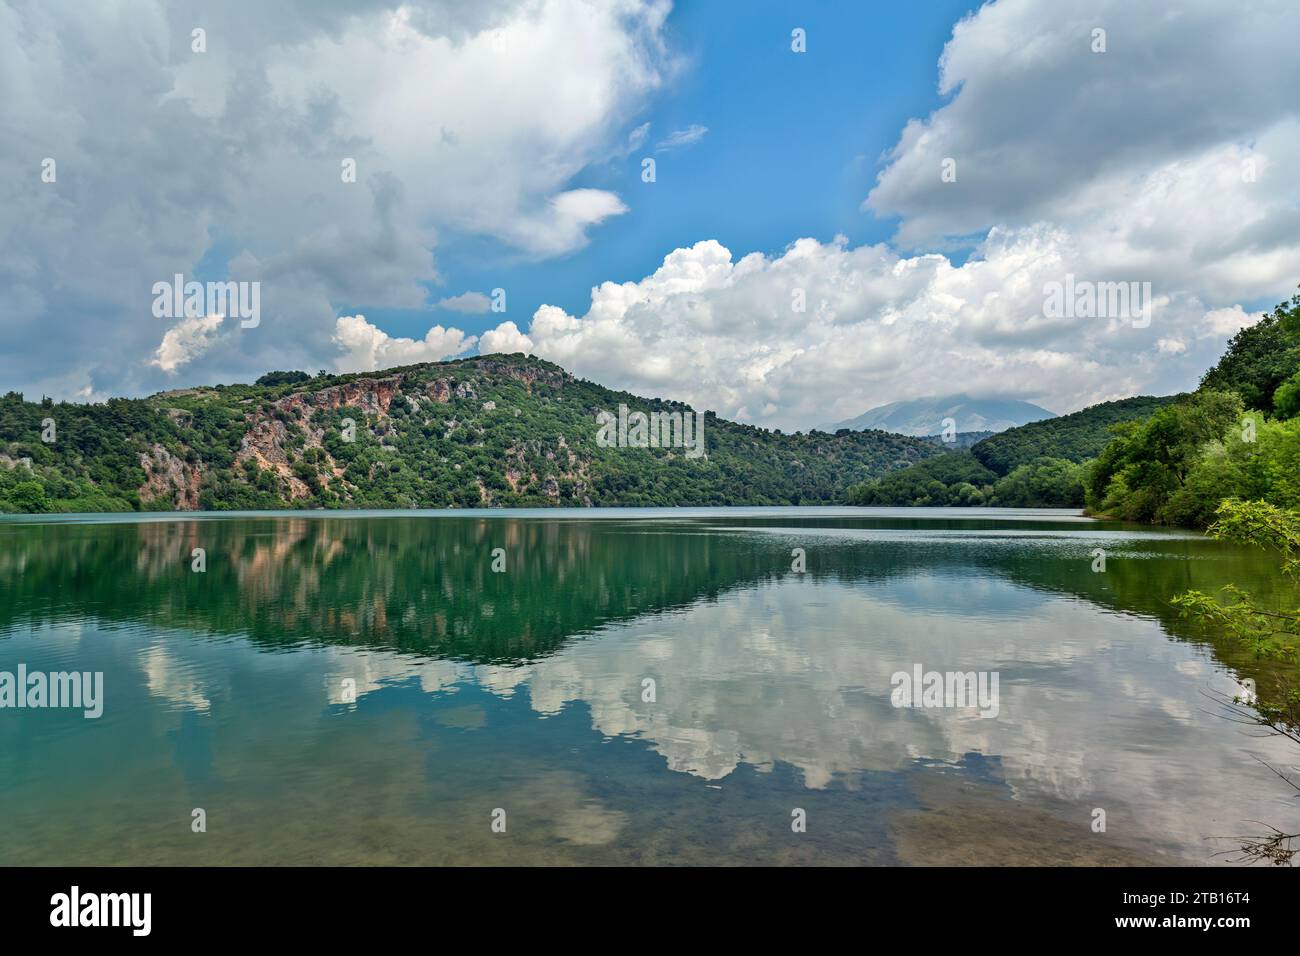 Der Ziros-See mit Wolken reflektiert die Wasseroberfläche, eine wunderschöne natürliche Ressource in der Region Preveza, Epirus, Griechenland, Europa. Stockfoto